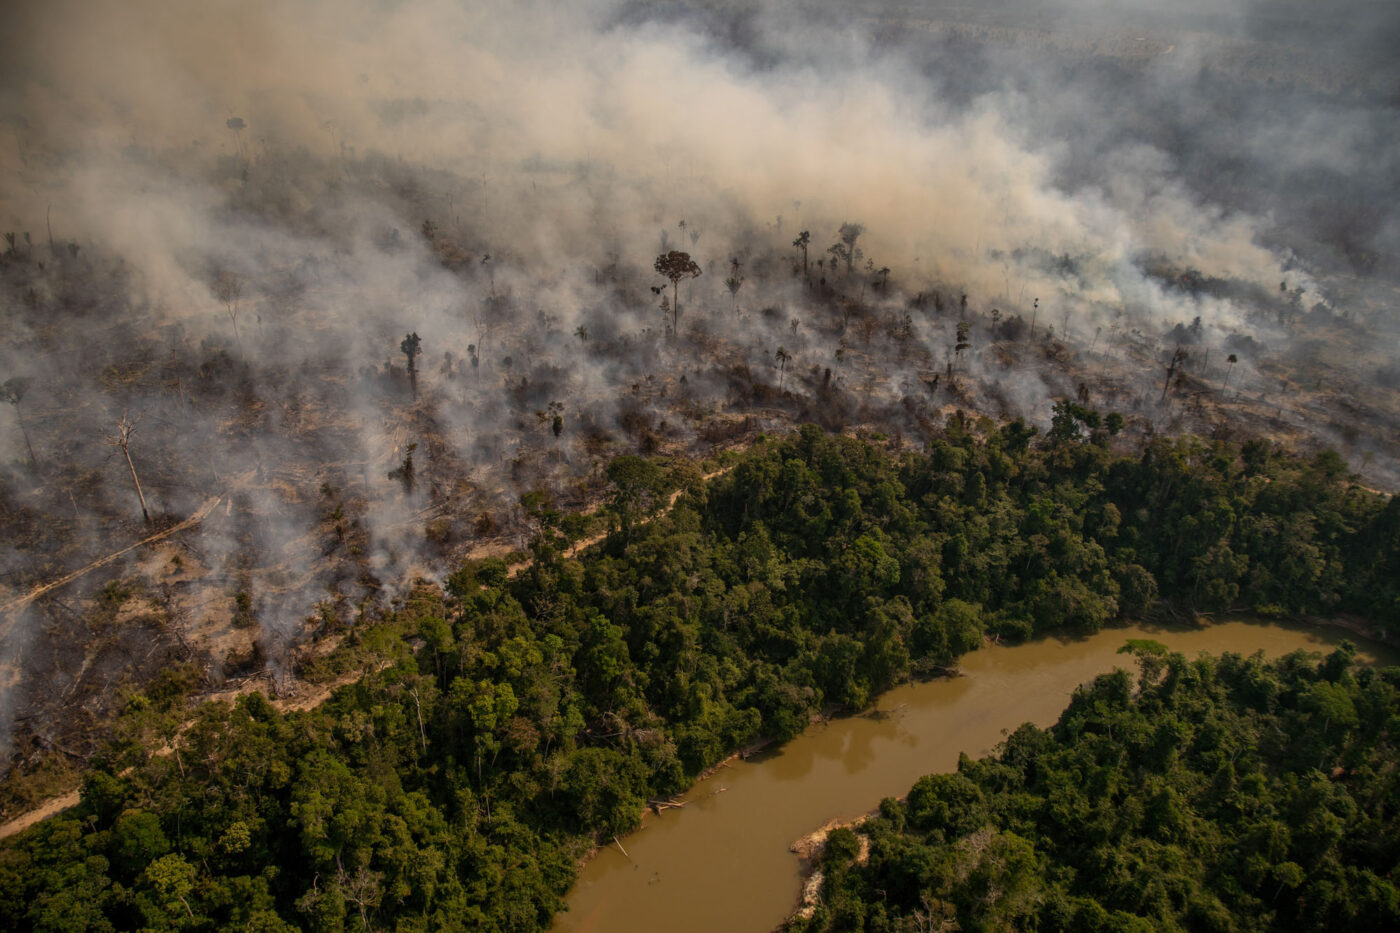 Na reserva Chico Mendes, no Acre, um retrato da destruição da Amazônia